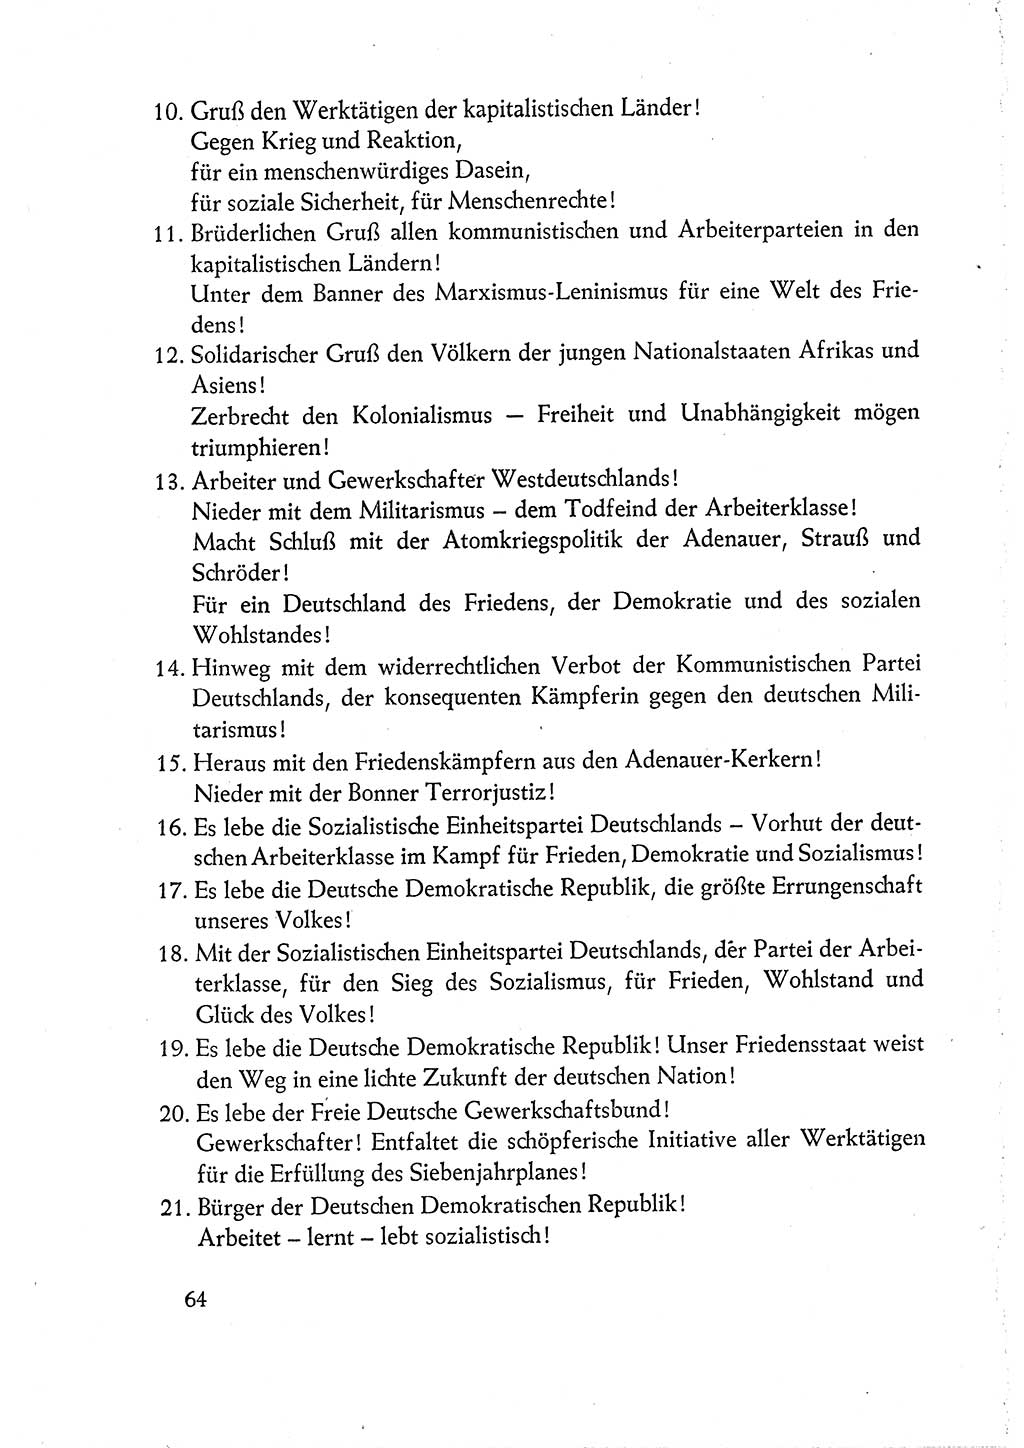 Dokumente der Sozialistischen Einheitspartei Deutschlands (SED) [Deutsche Demokratische Republik (DDR)] 1960-1961, Seite 64 (Dok. SED DDR 1960-1961, S. 64)